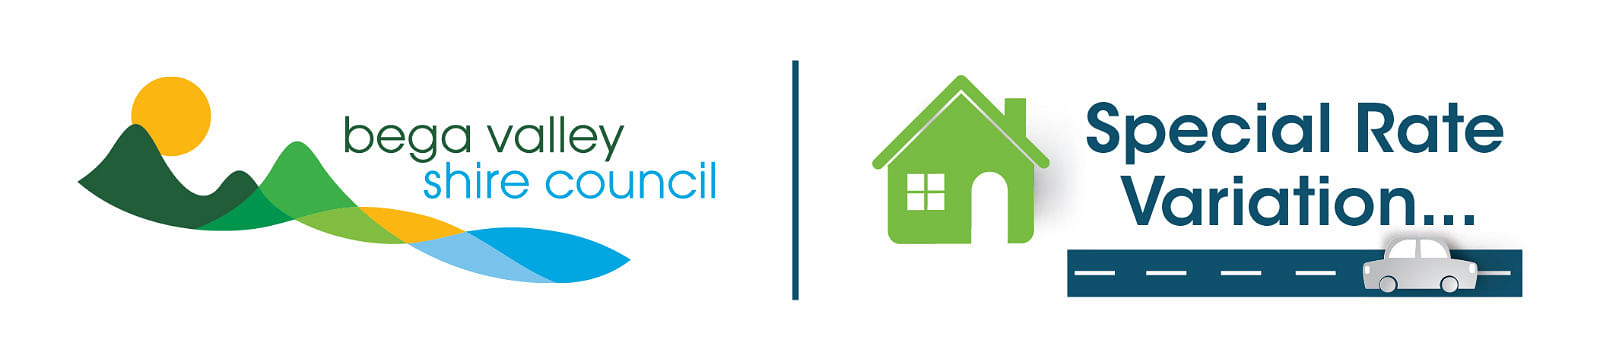 Bega Valley Shire Council logo.